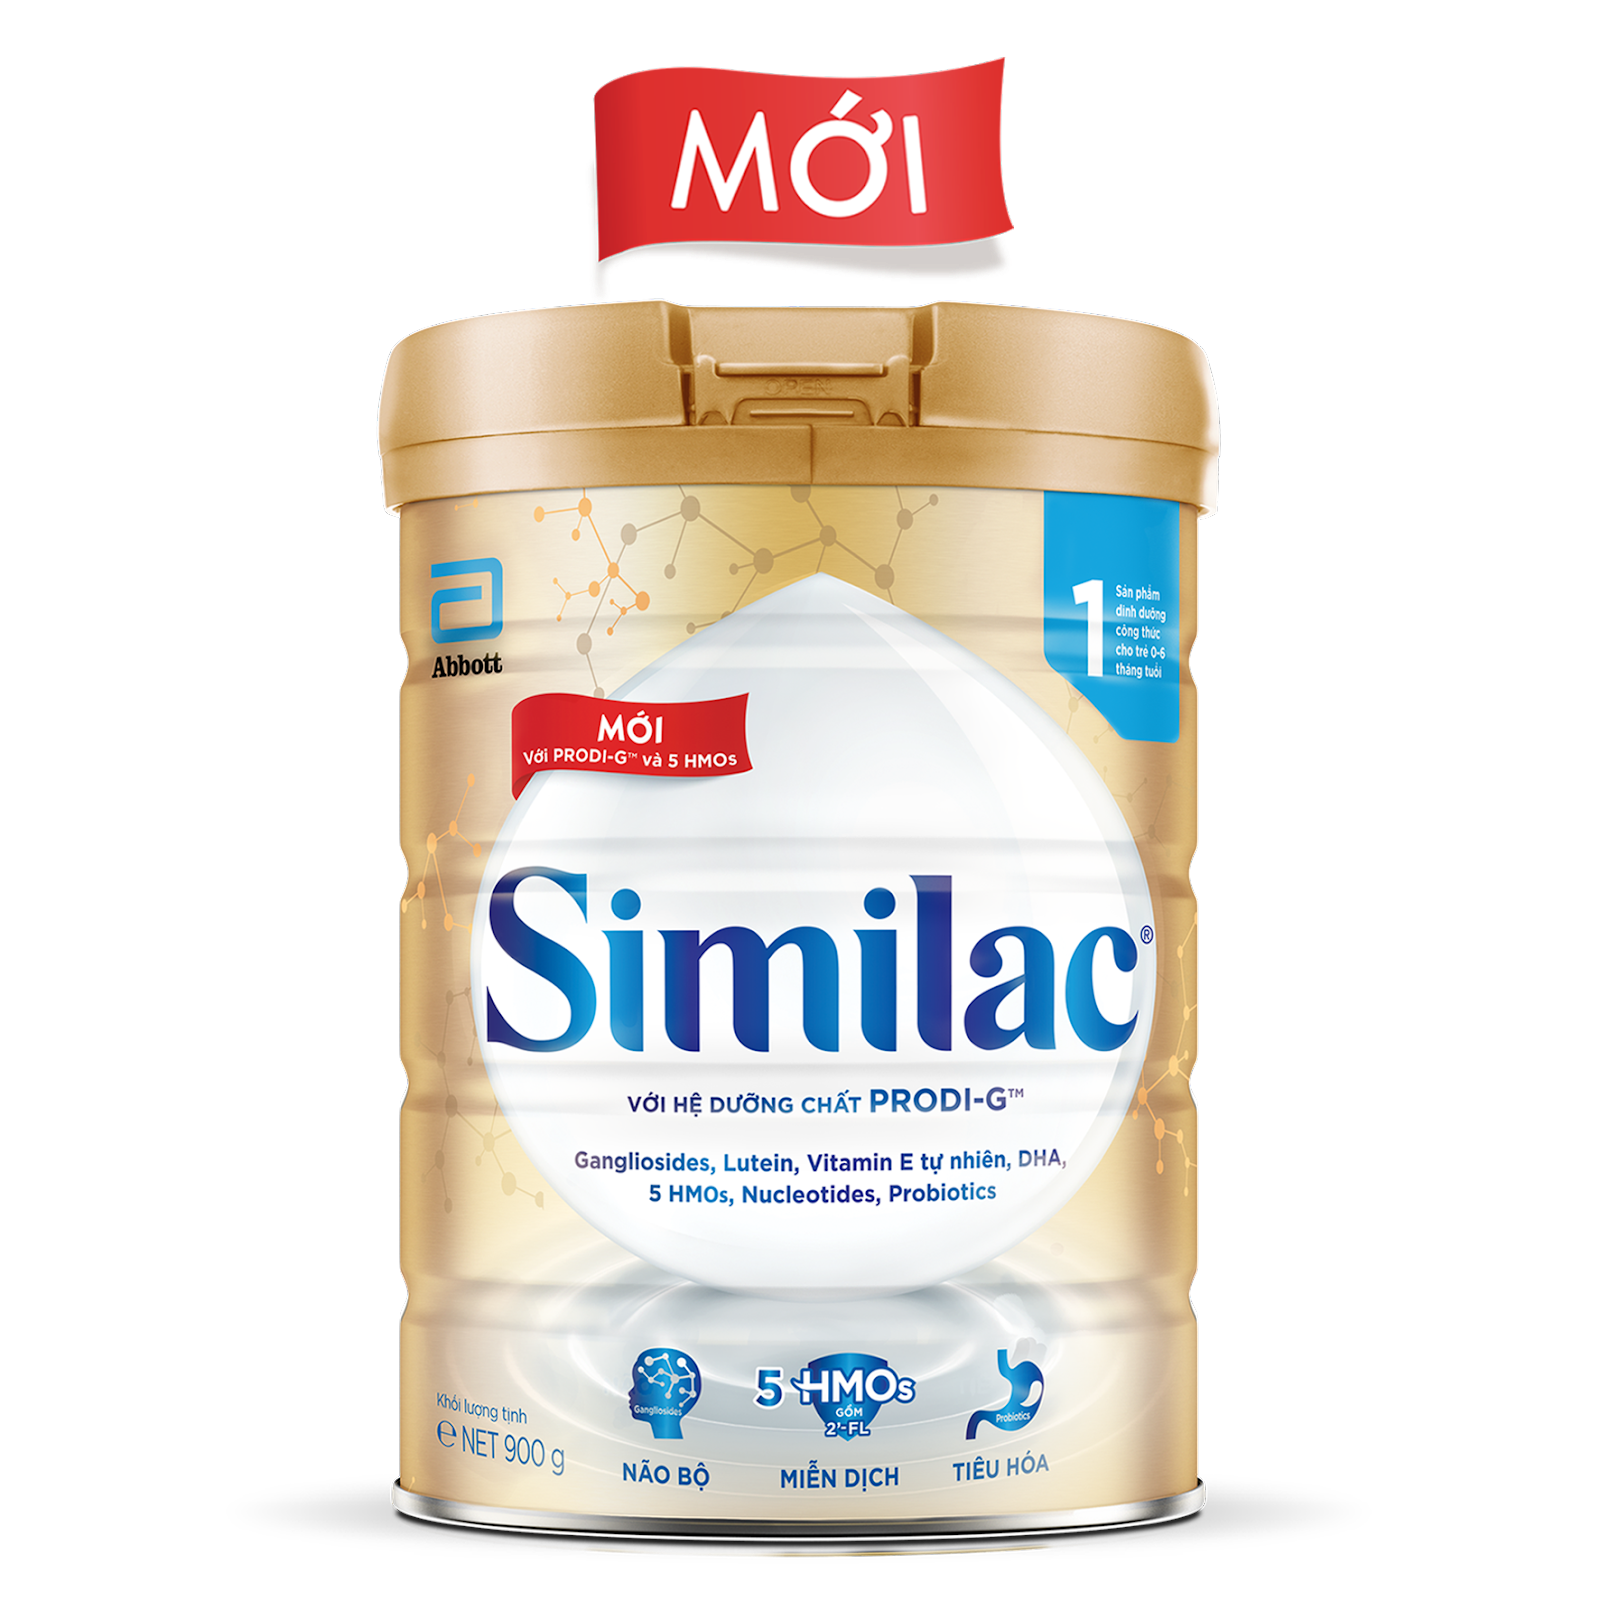 Sữa Bột Abbott Similac Newborn 1 900g